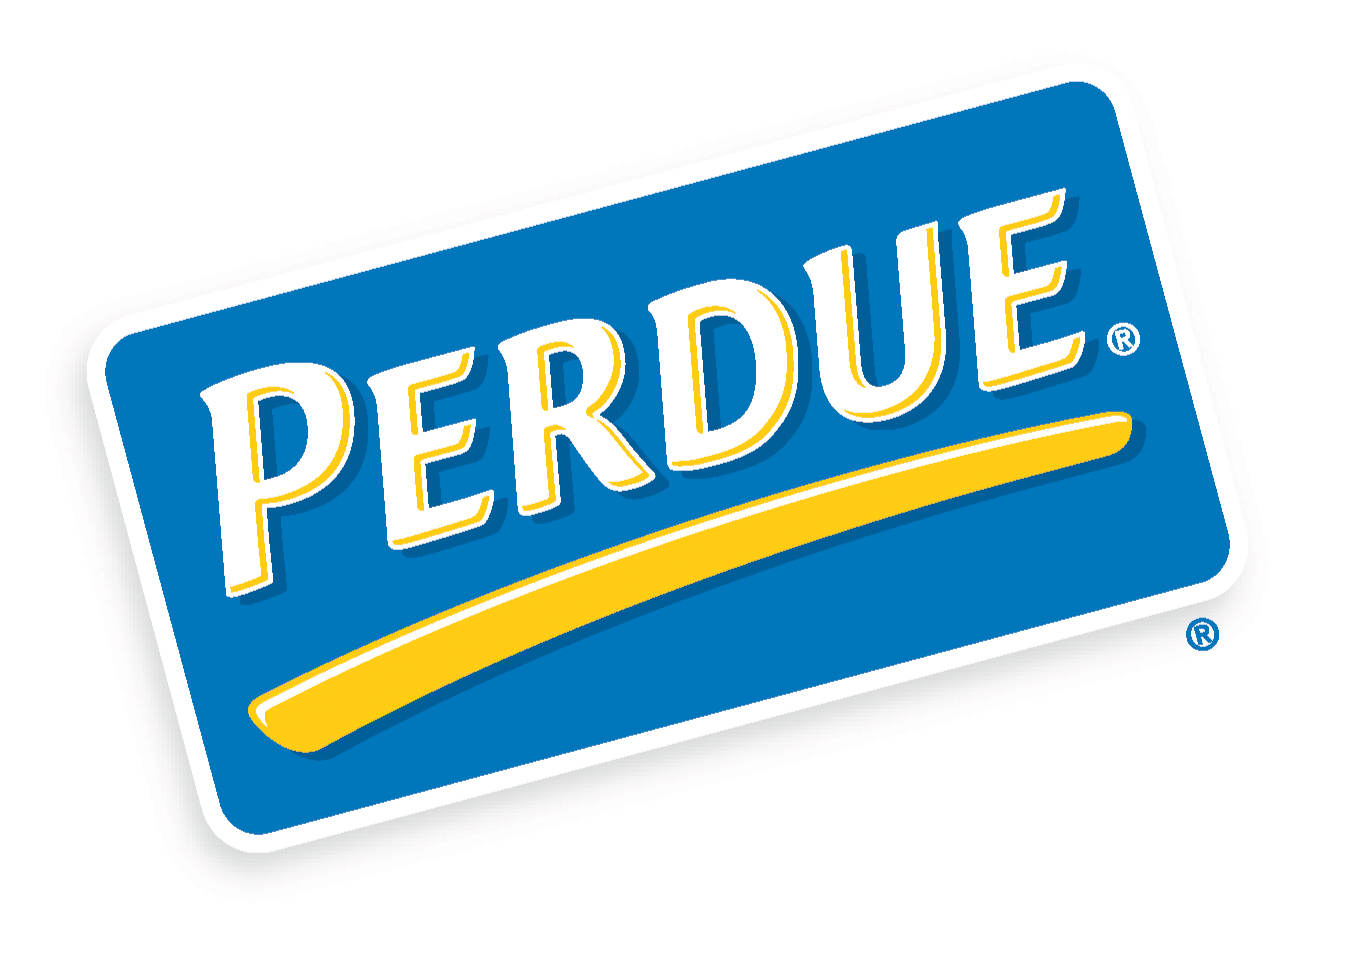 PERDUE® Chicken Logo